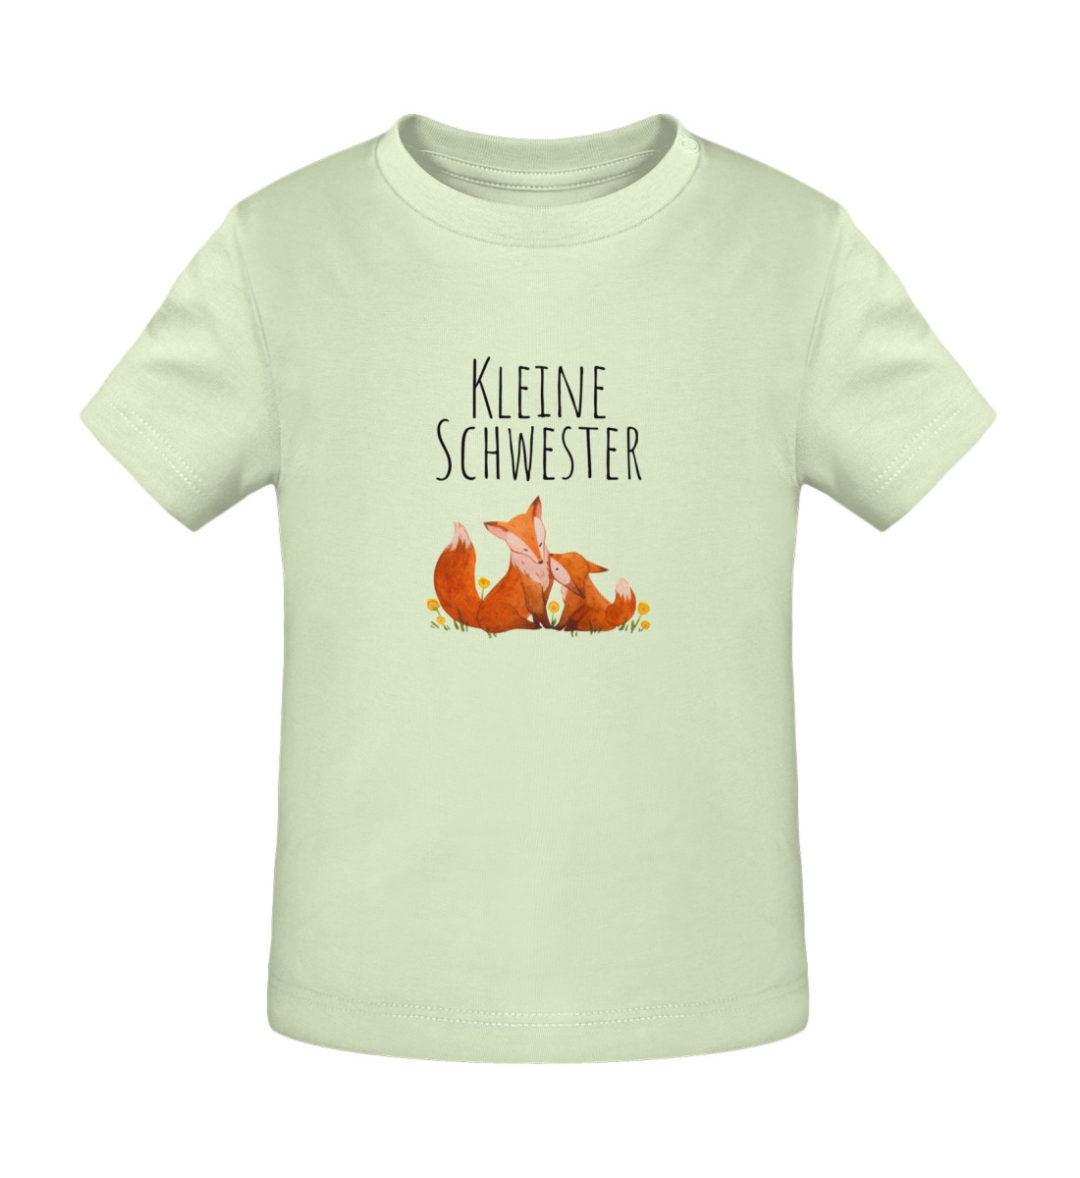 Kleine Schwester - Baby Creator T-Shirt ST/ST-7105